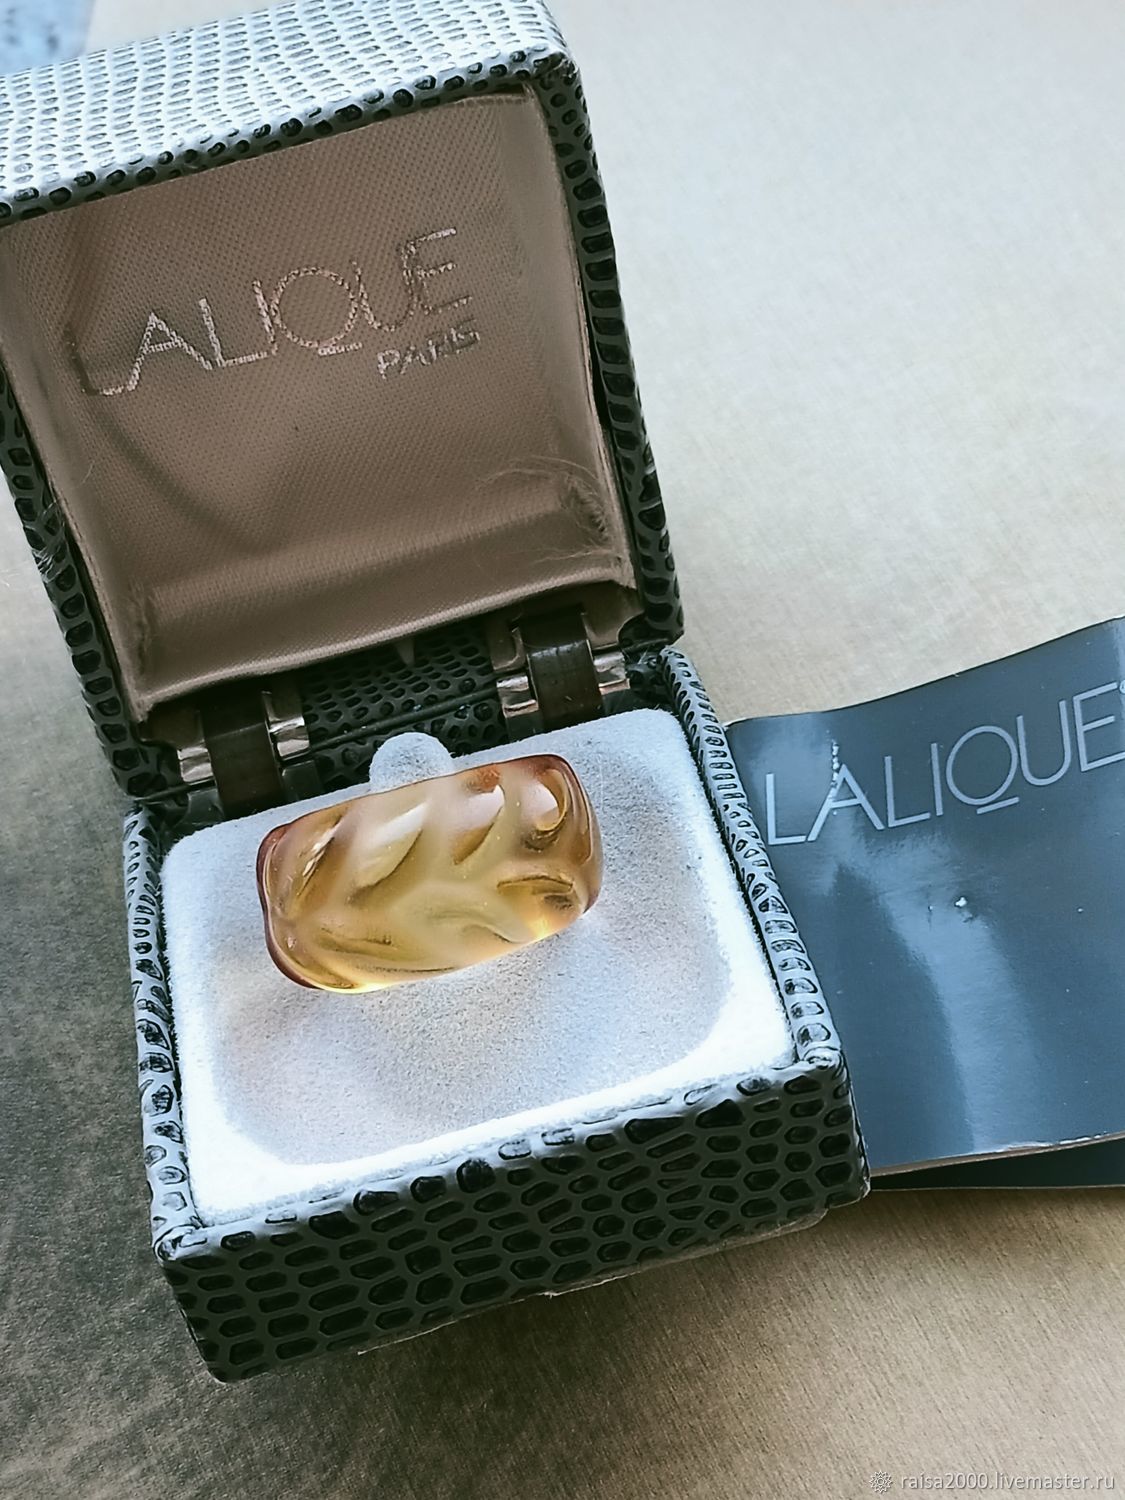 Винтаж: Кольцо Lalique, Кольца винтажные, Москва,  Фото №1